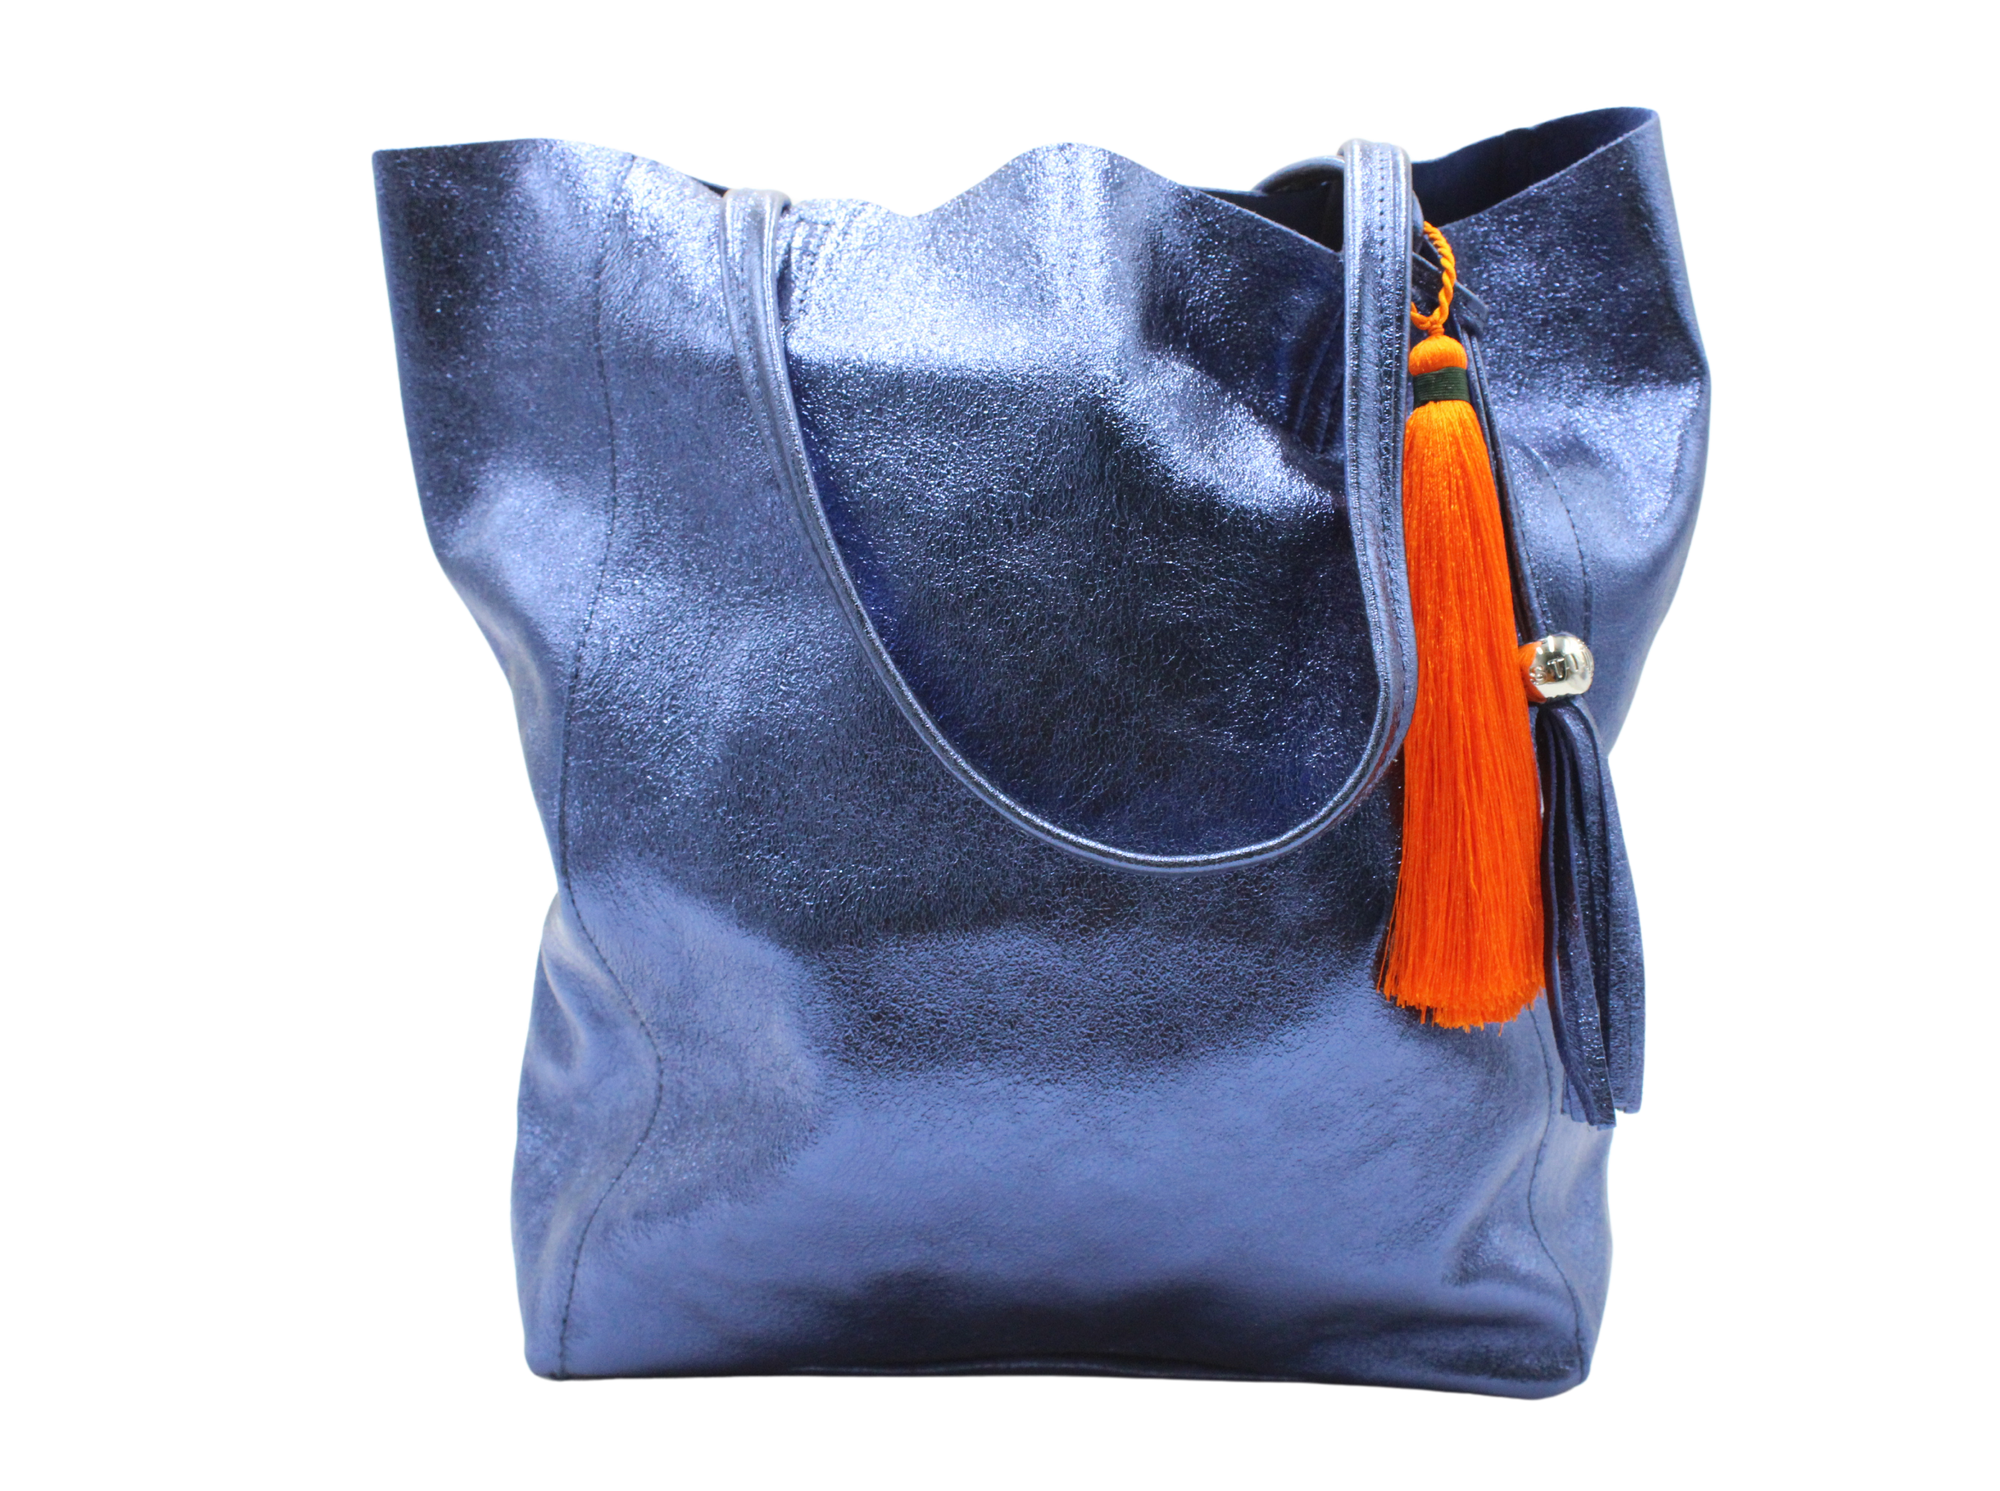 The 'Bessie' Italian Leather Shopper in Vibrant Navy Blue & Orange Tassel